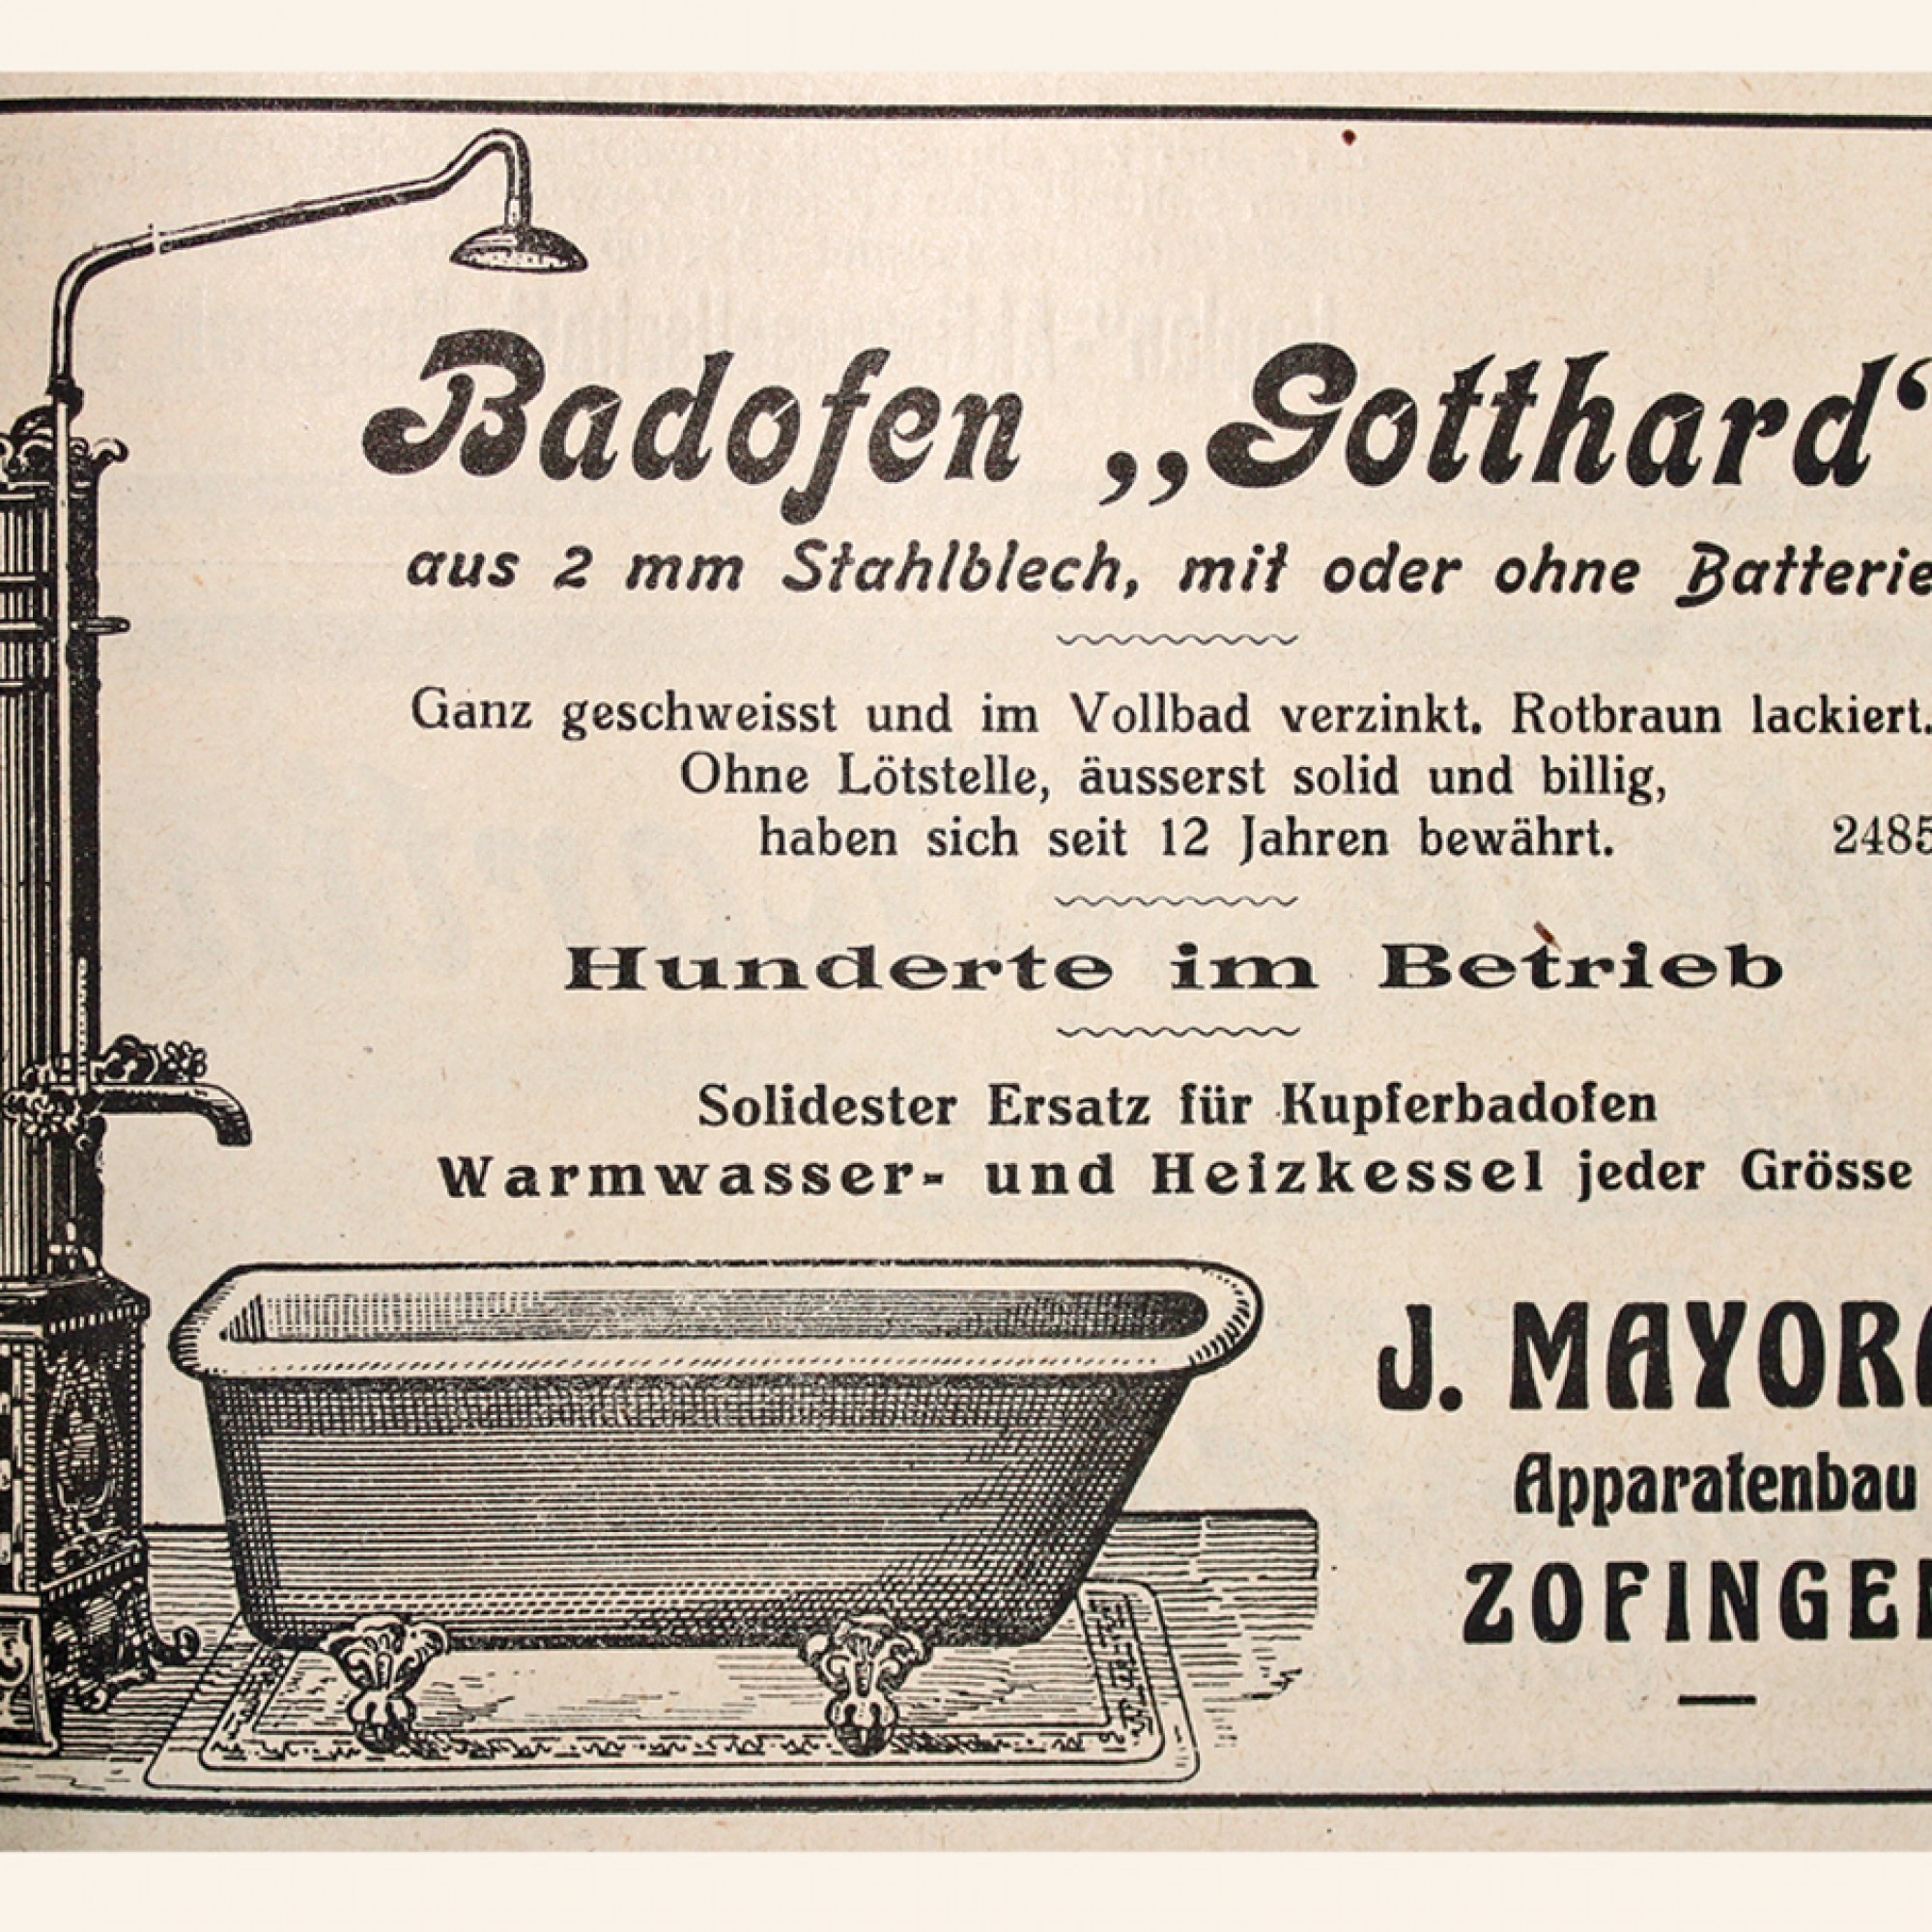 Vor fast 100 Jahren taufte man einen simplen Badofen auf den Namen «Gotthard».